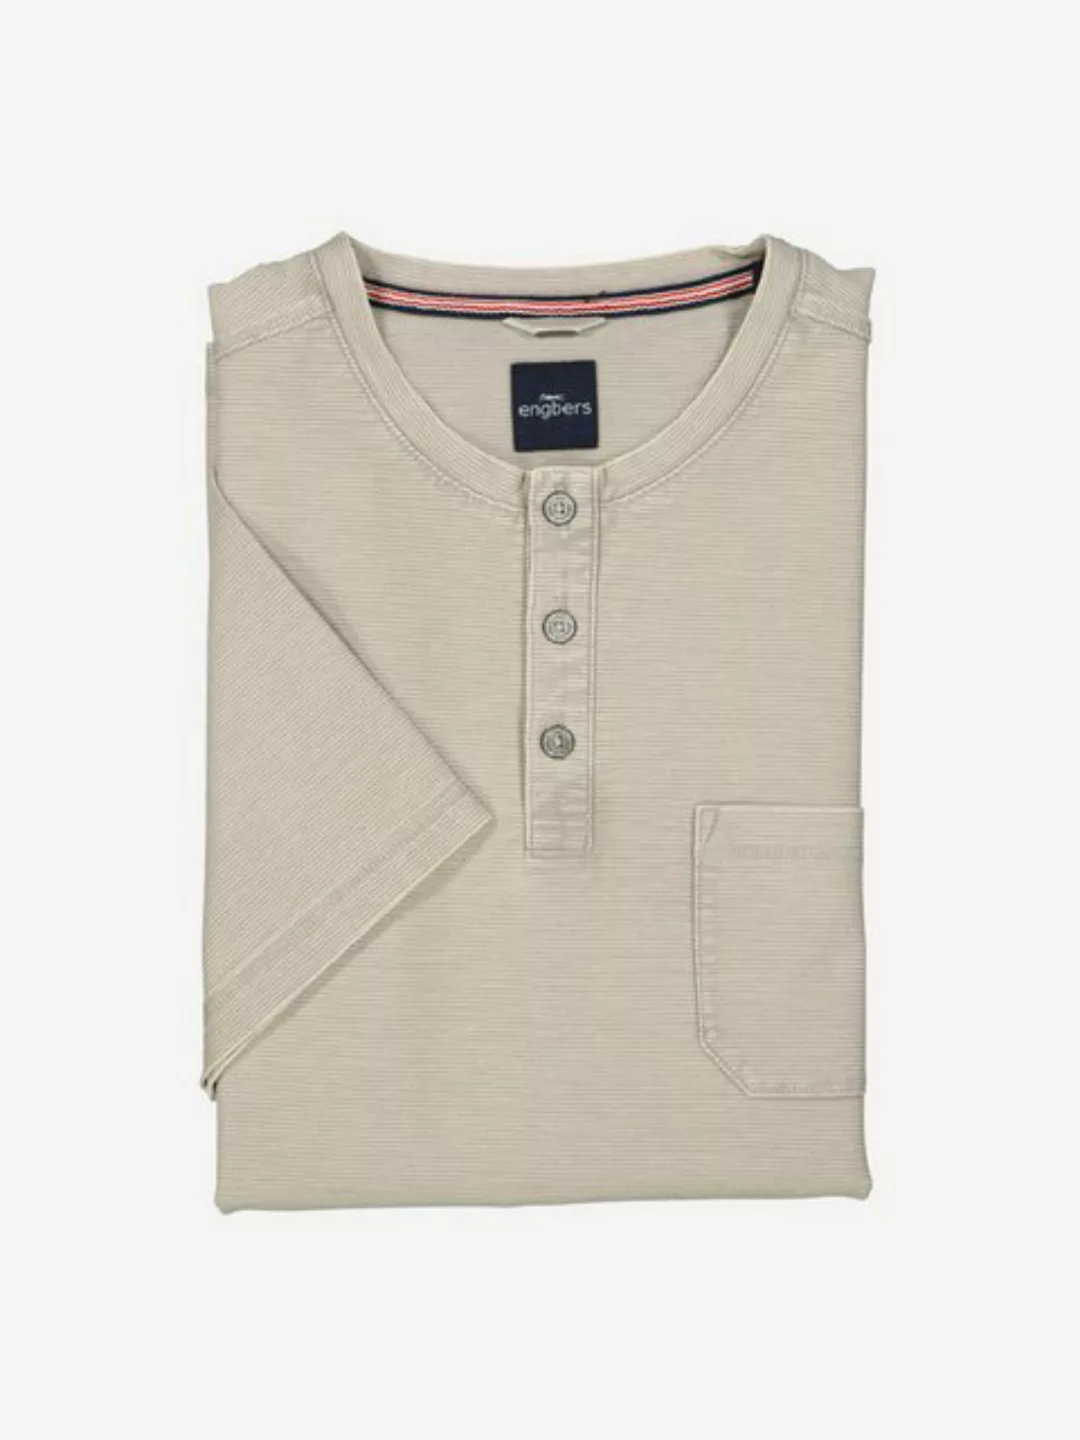 Engbers T-Shirt Henley-Shirt regular günstig online kaufen